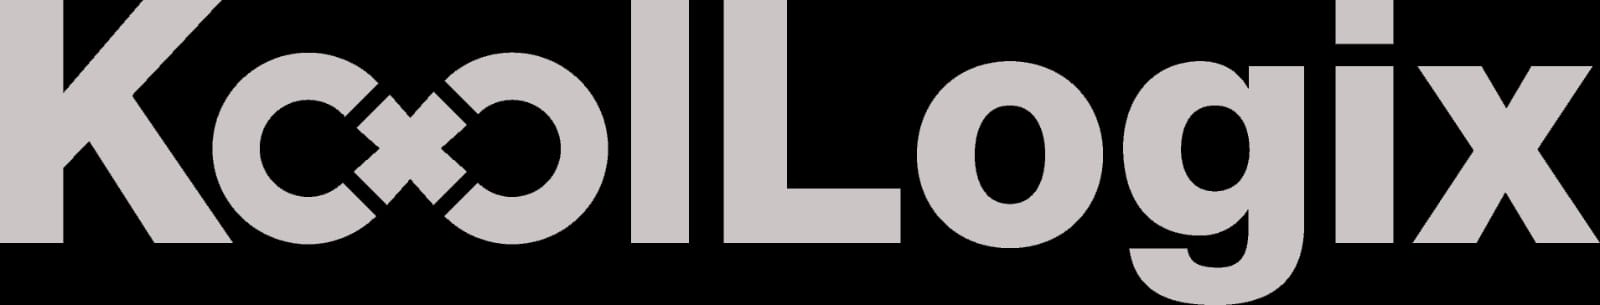 Koollogix Pte. Ltd. logo